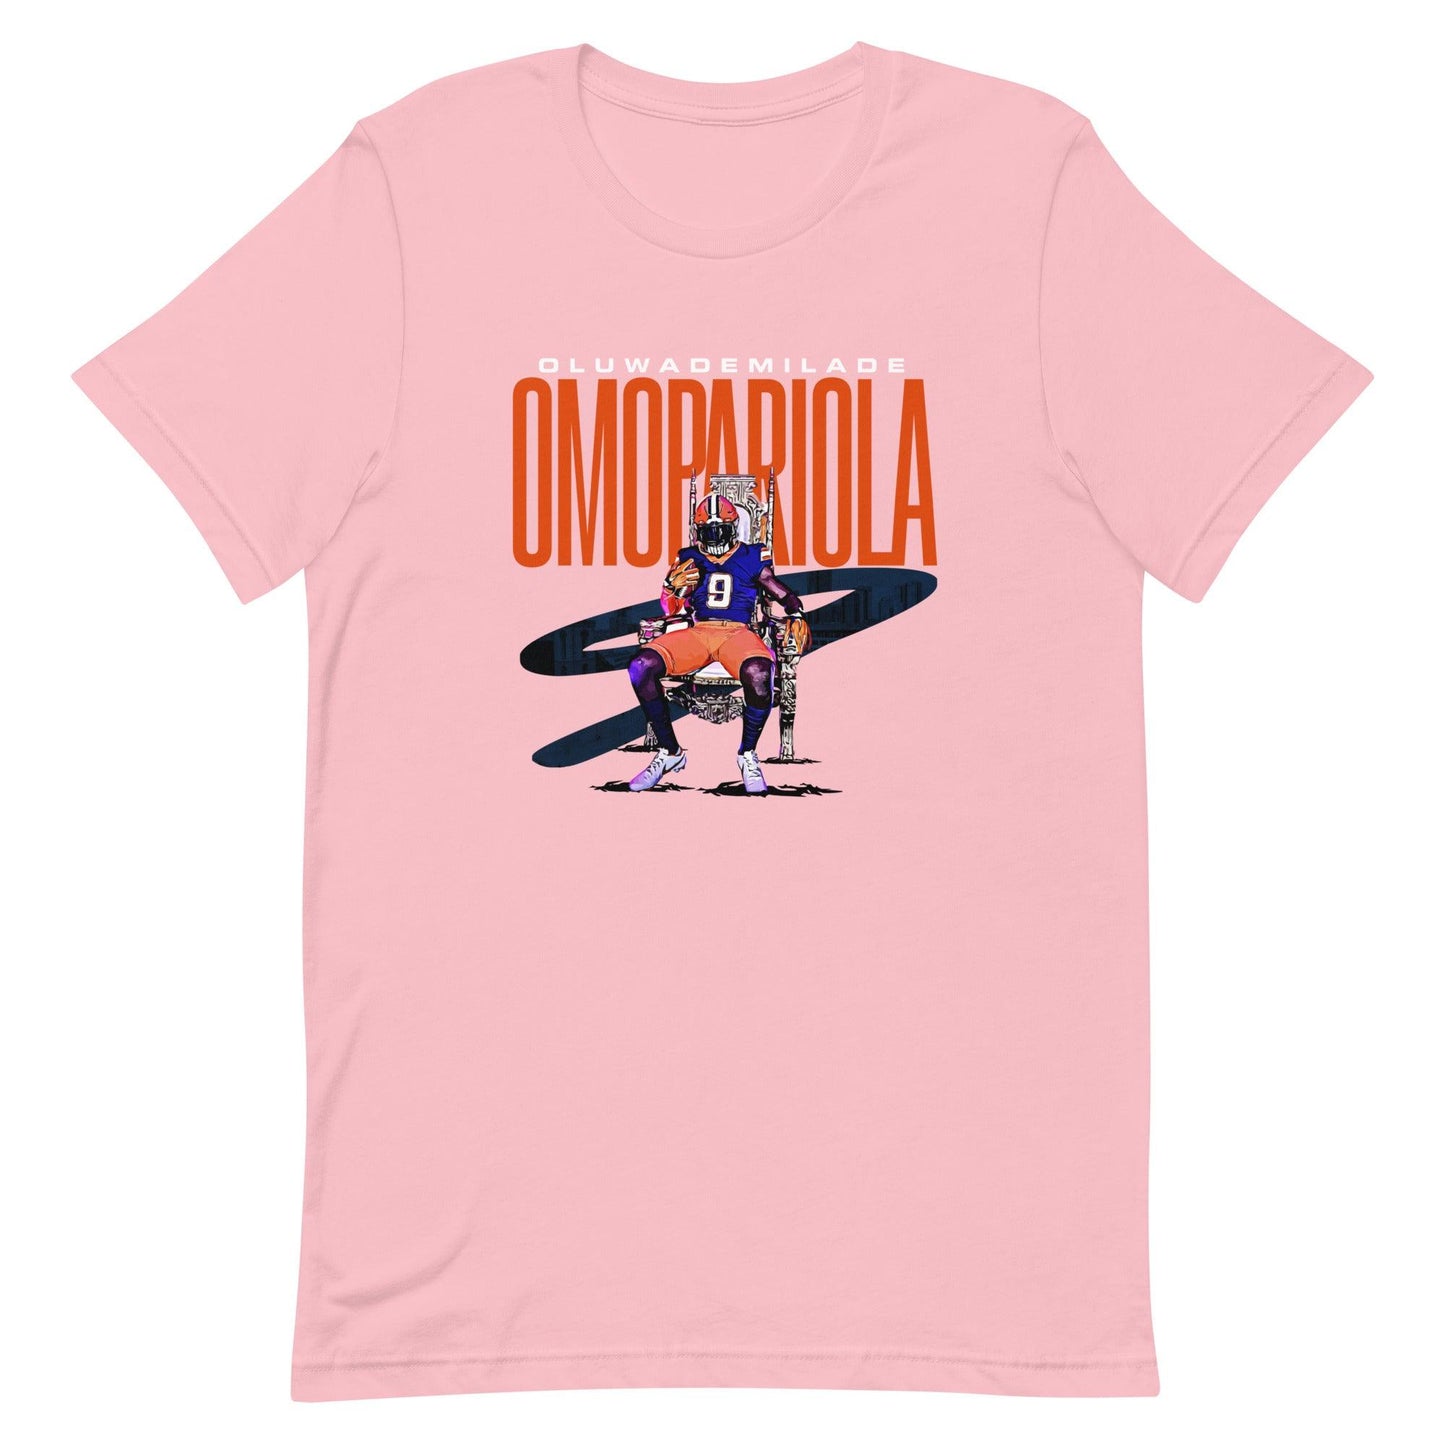 Oluwademilade Omopariola "Gameday" t-shirt - Fan Arch